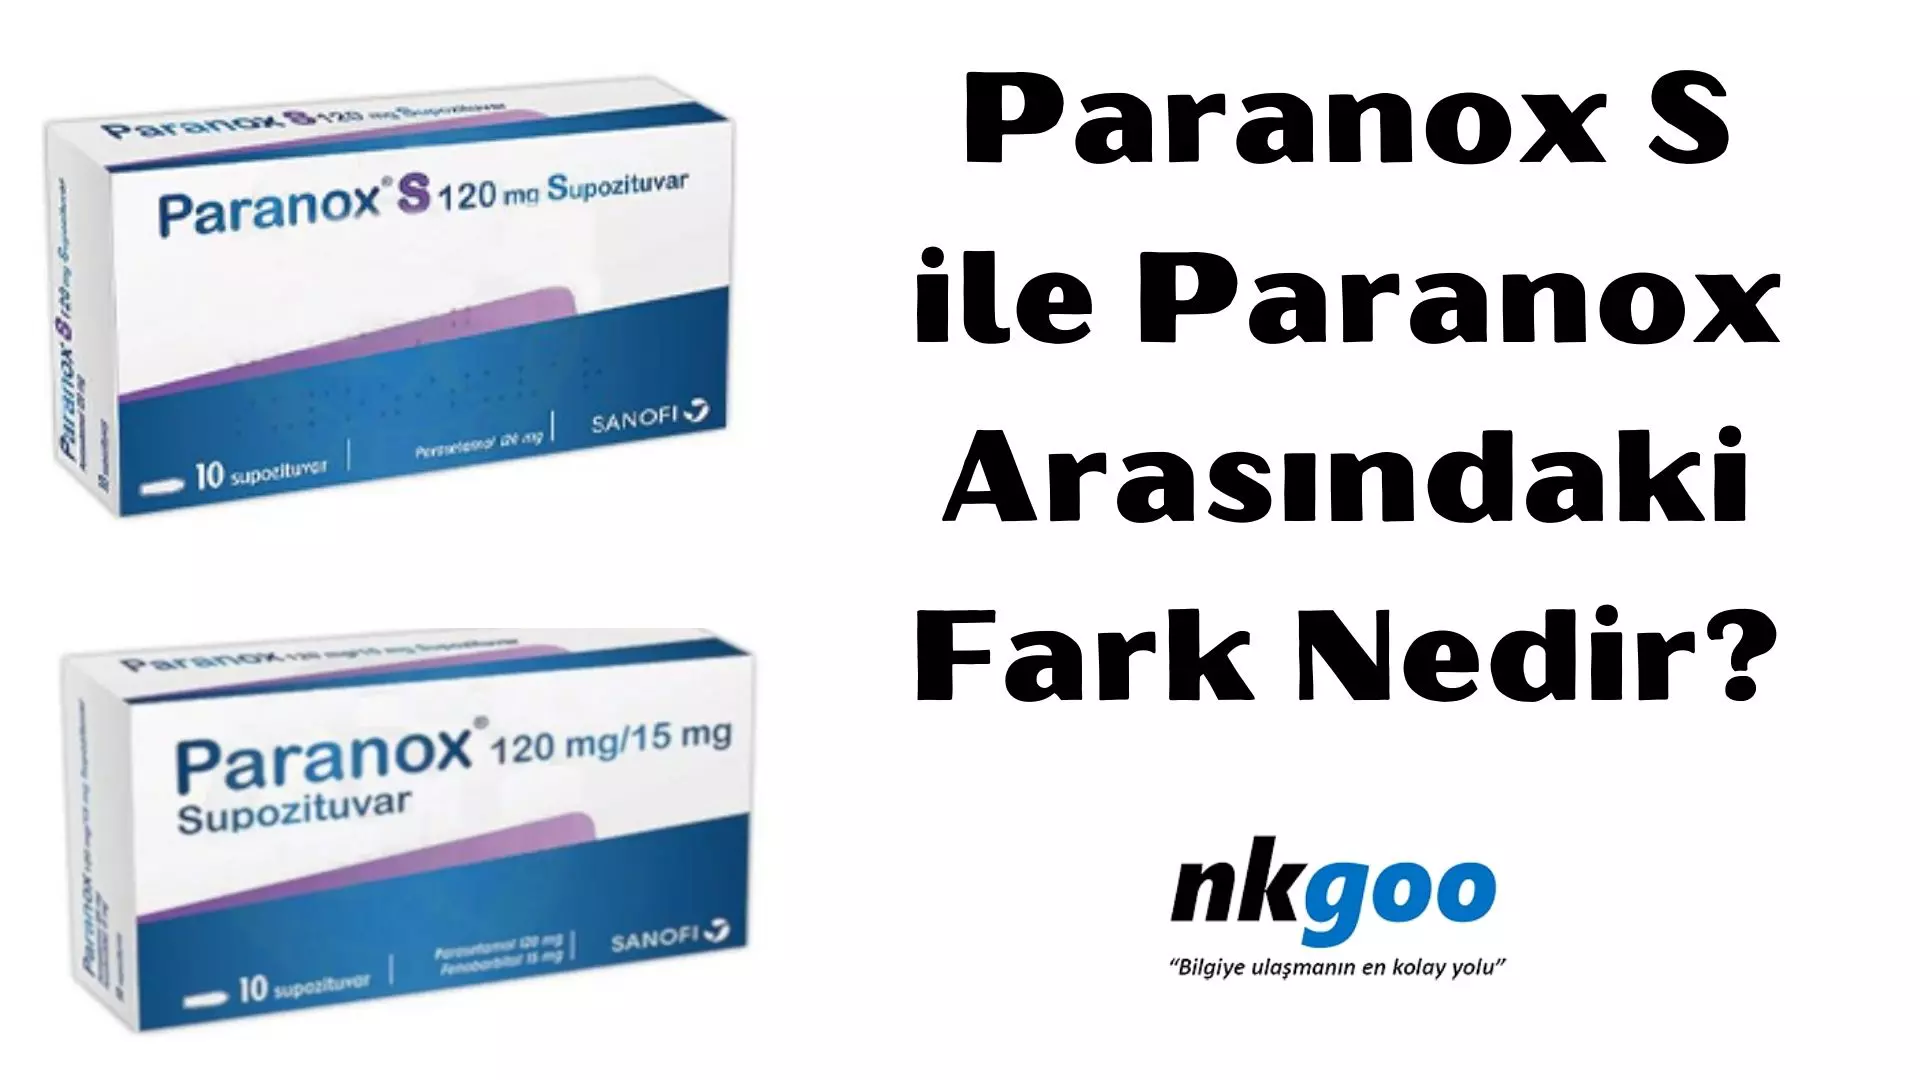 Paranox S ile Paranox Arasındaki Fark Nedir?